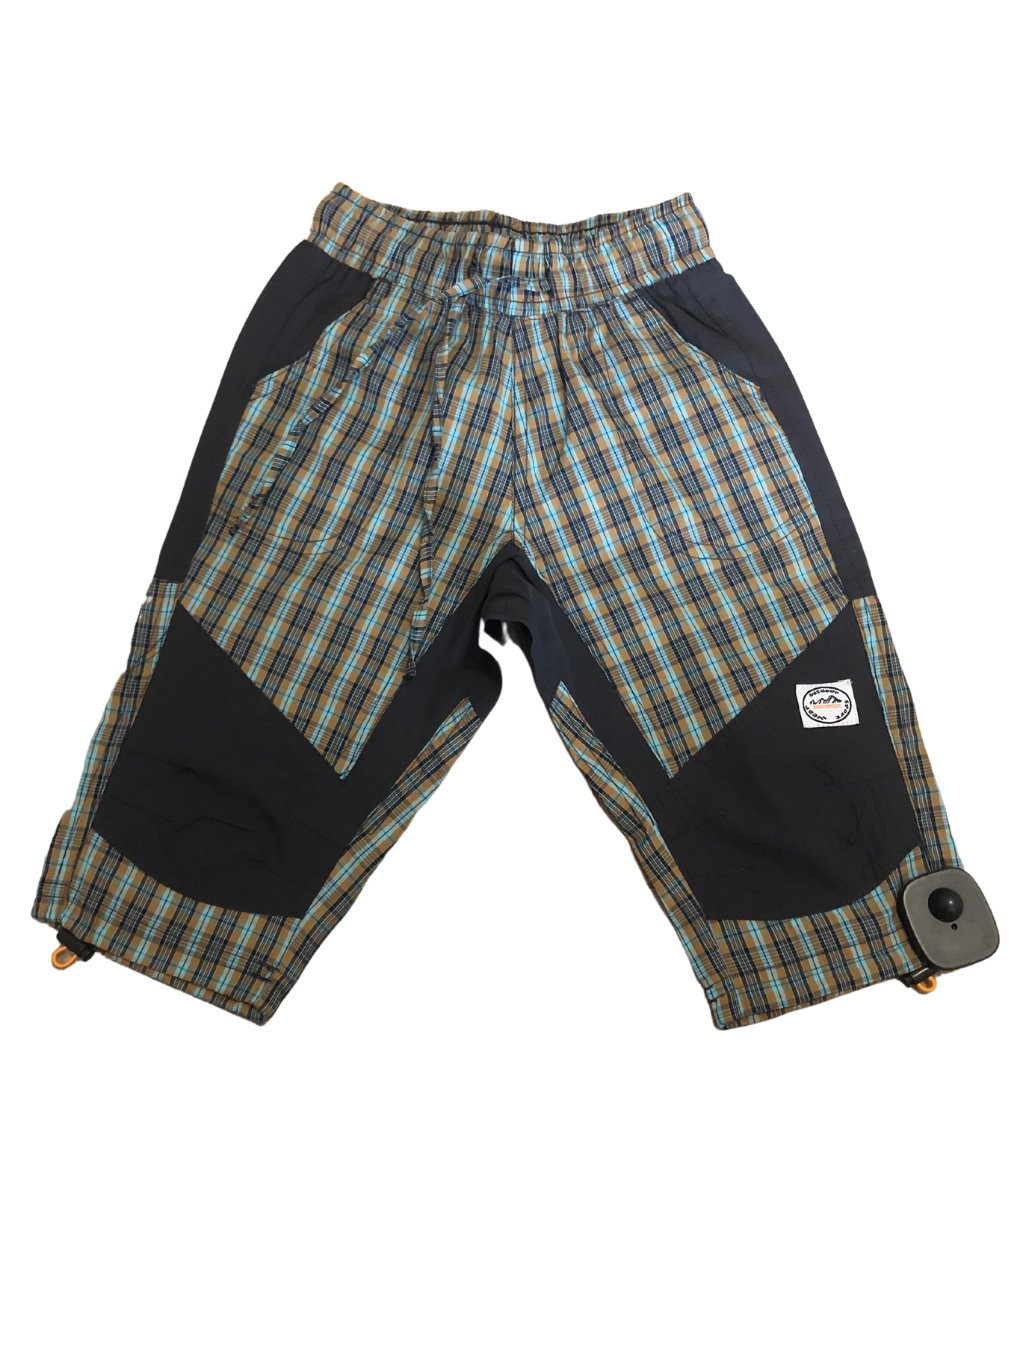 Kalhoty 3/4 krátké dětské chlapecké (98-132) NEVEREST MD-K255CC